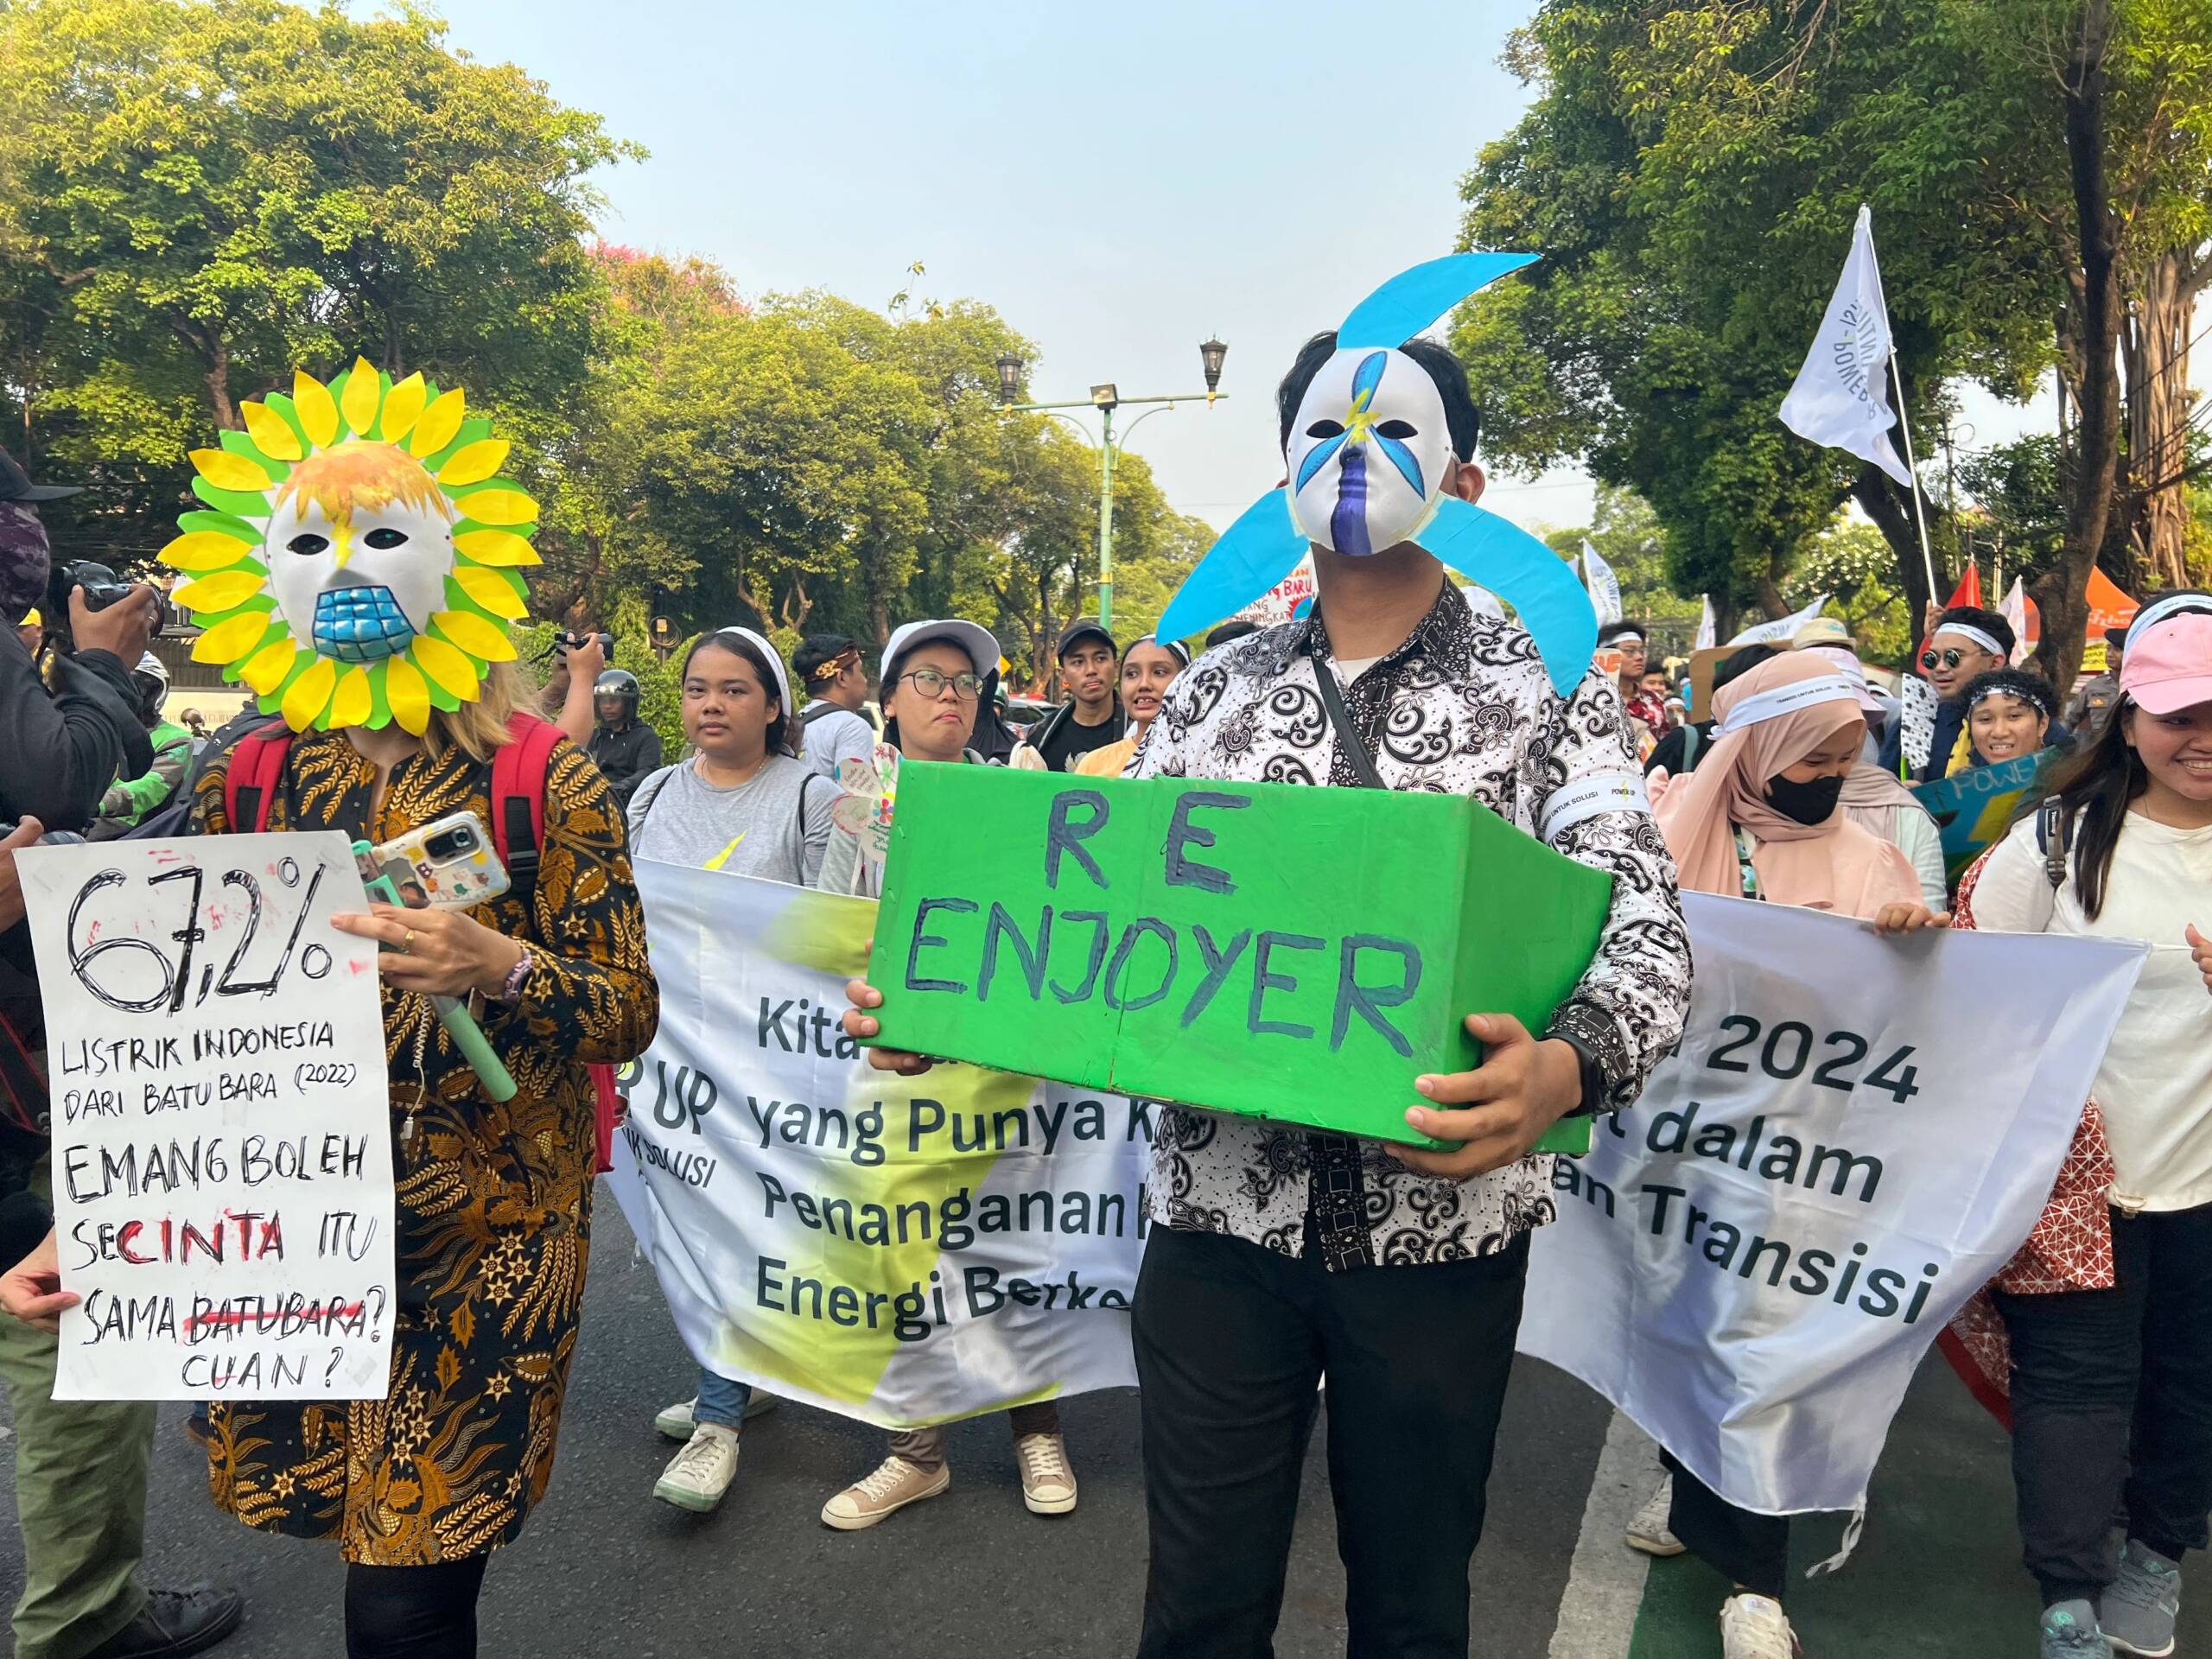 Jakarta, Indonésie, le 3 novembre : des centaines de jeunes et d’adultes ont manifesté pour demander aux candidats potentiels à la présidence de donner la priorité aux questions environnementales et à une transition énergétique juste lors des élections de l’an prochain. Crédit photo : Kathleen Lei Limayo